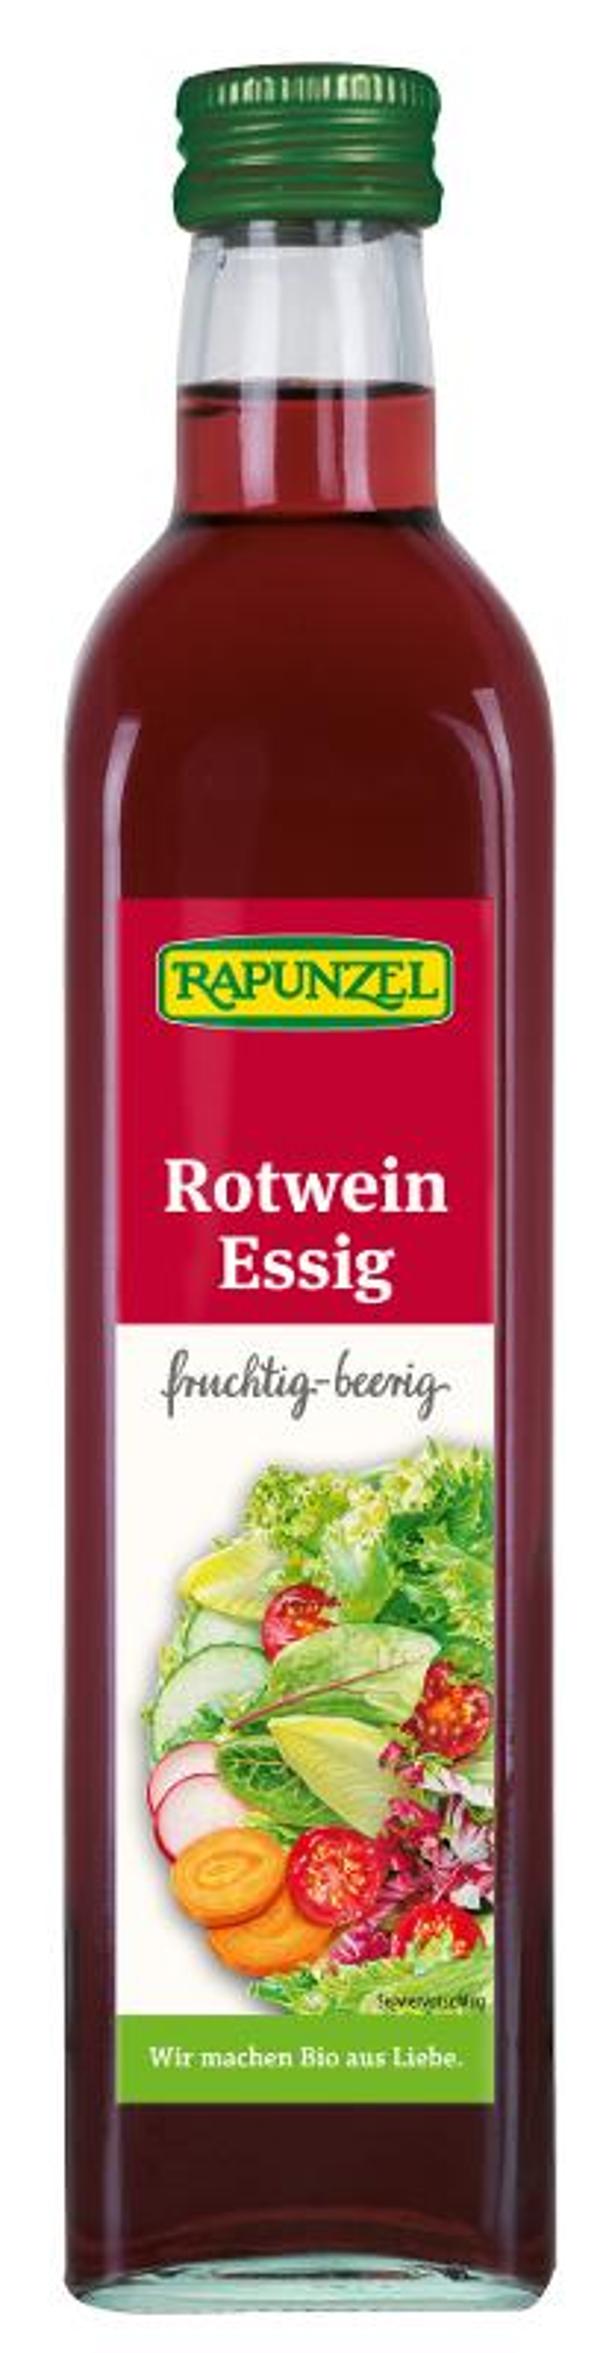 Produktfoto zu Rapunzel Rotweinessig - 0,5l